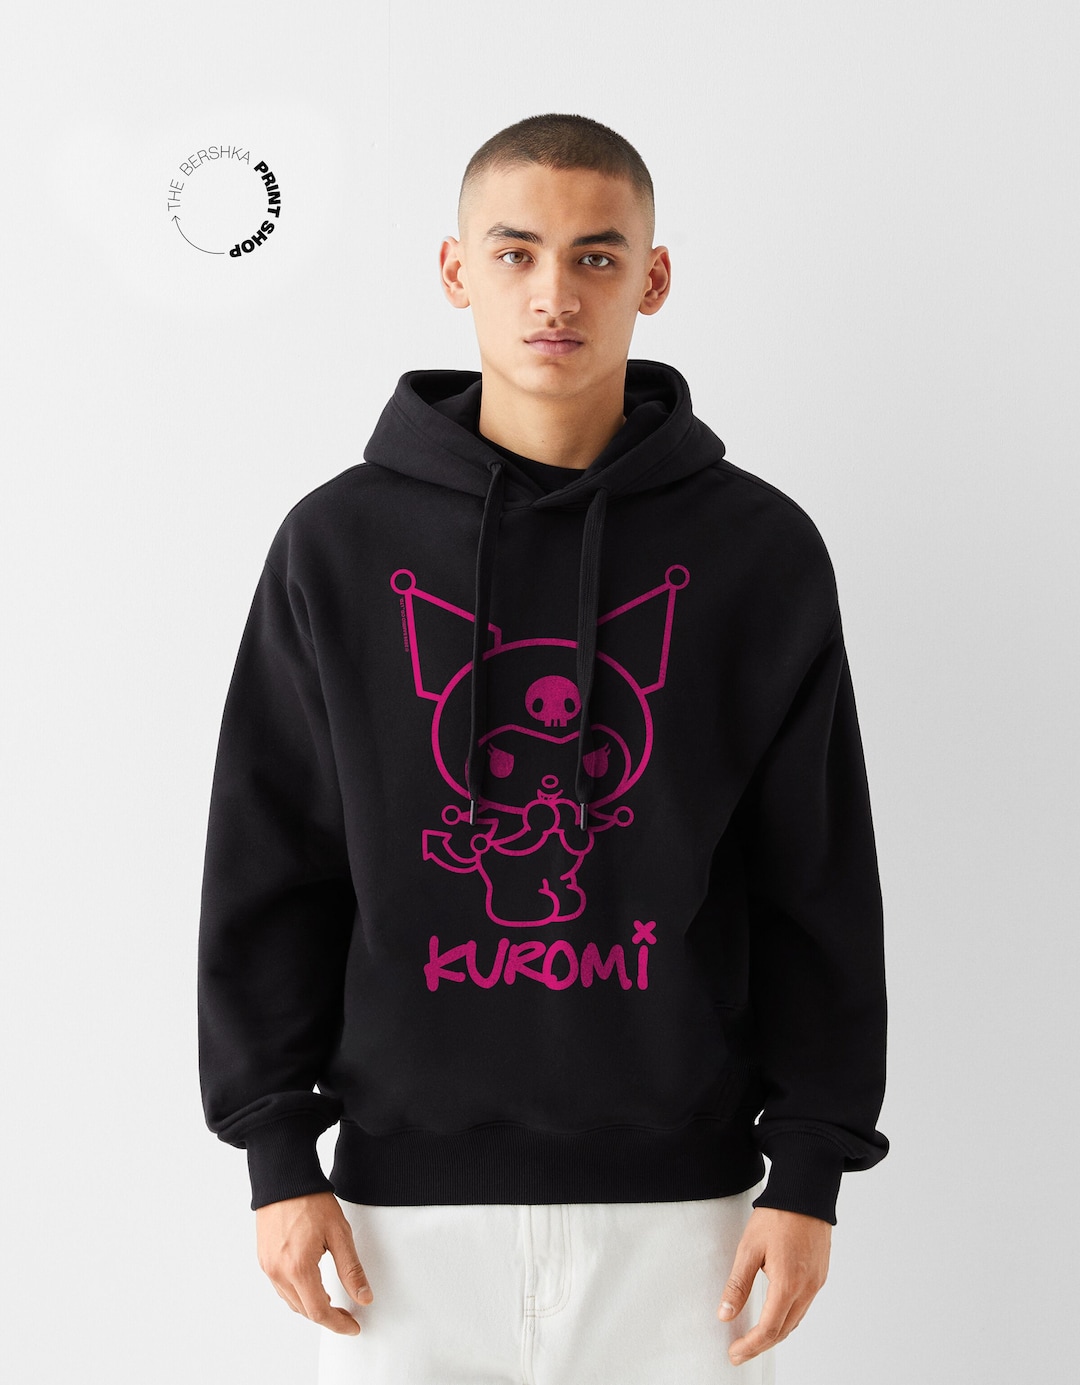 Kuromi oversize hoodie